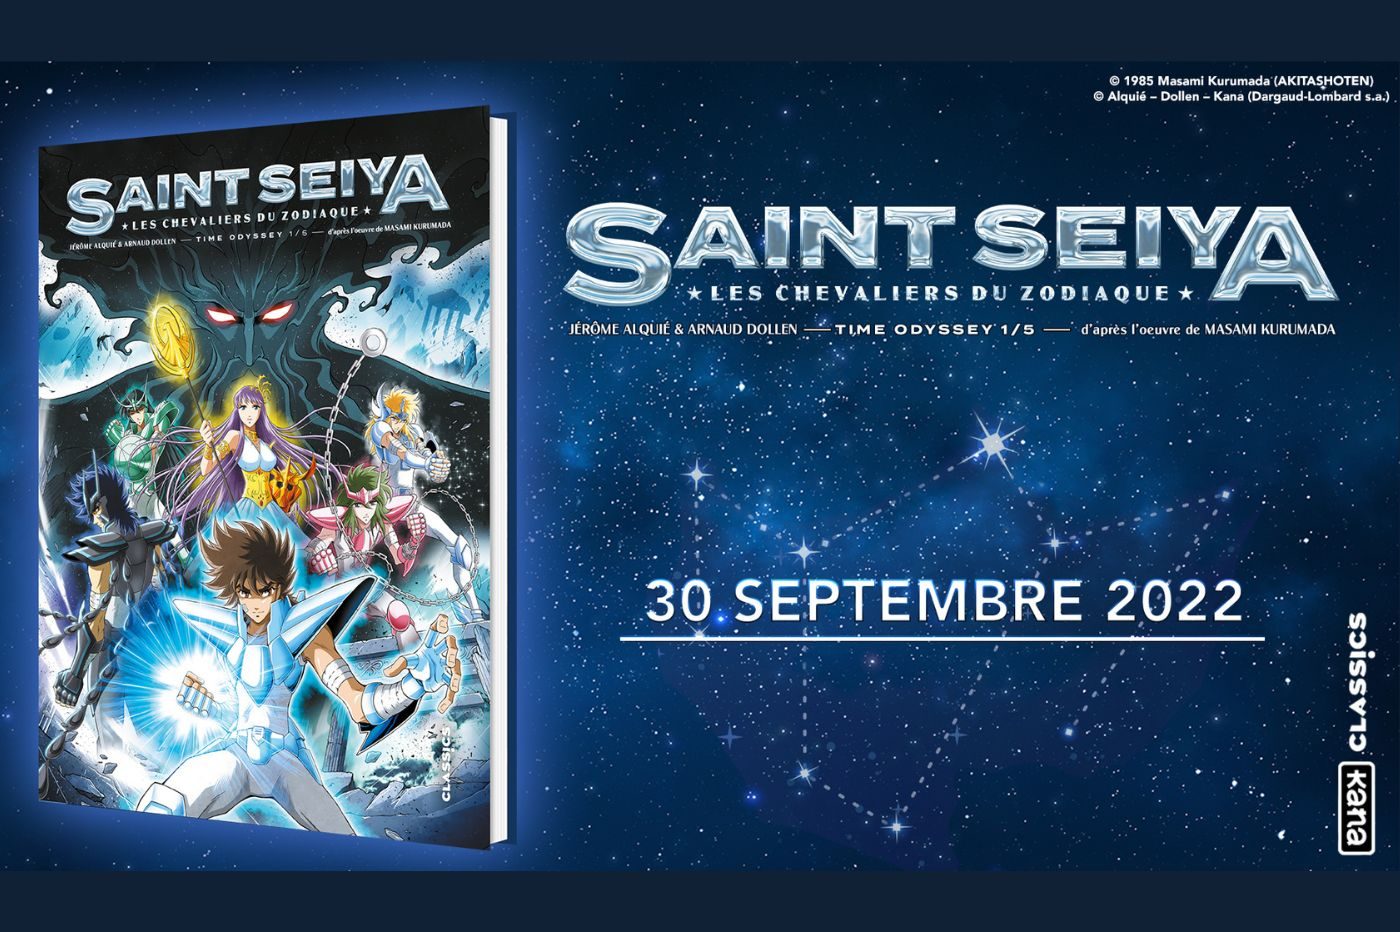 Image promotionnelle de la BD Saint Seiya avec la couverture, la date de sortie et le titre